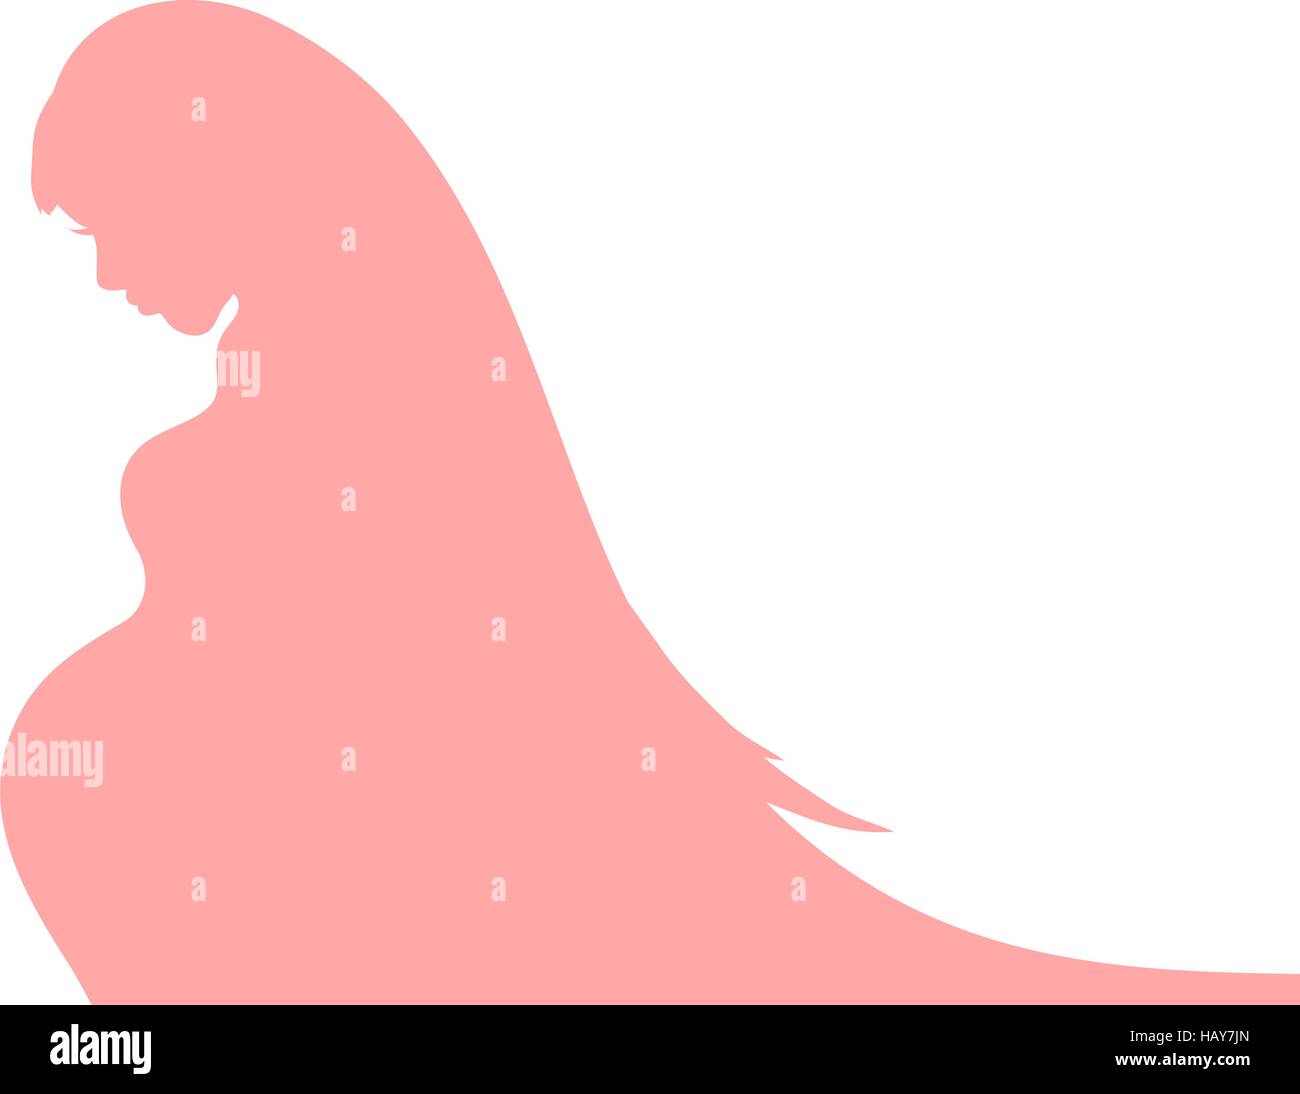 Zusammenfassung Hintergrund mit schwangeren Frauen-Silhouette für Ihr design Stock Vektor